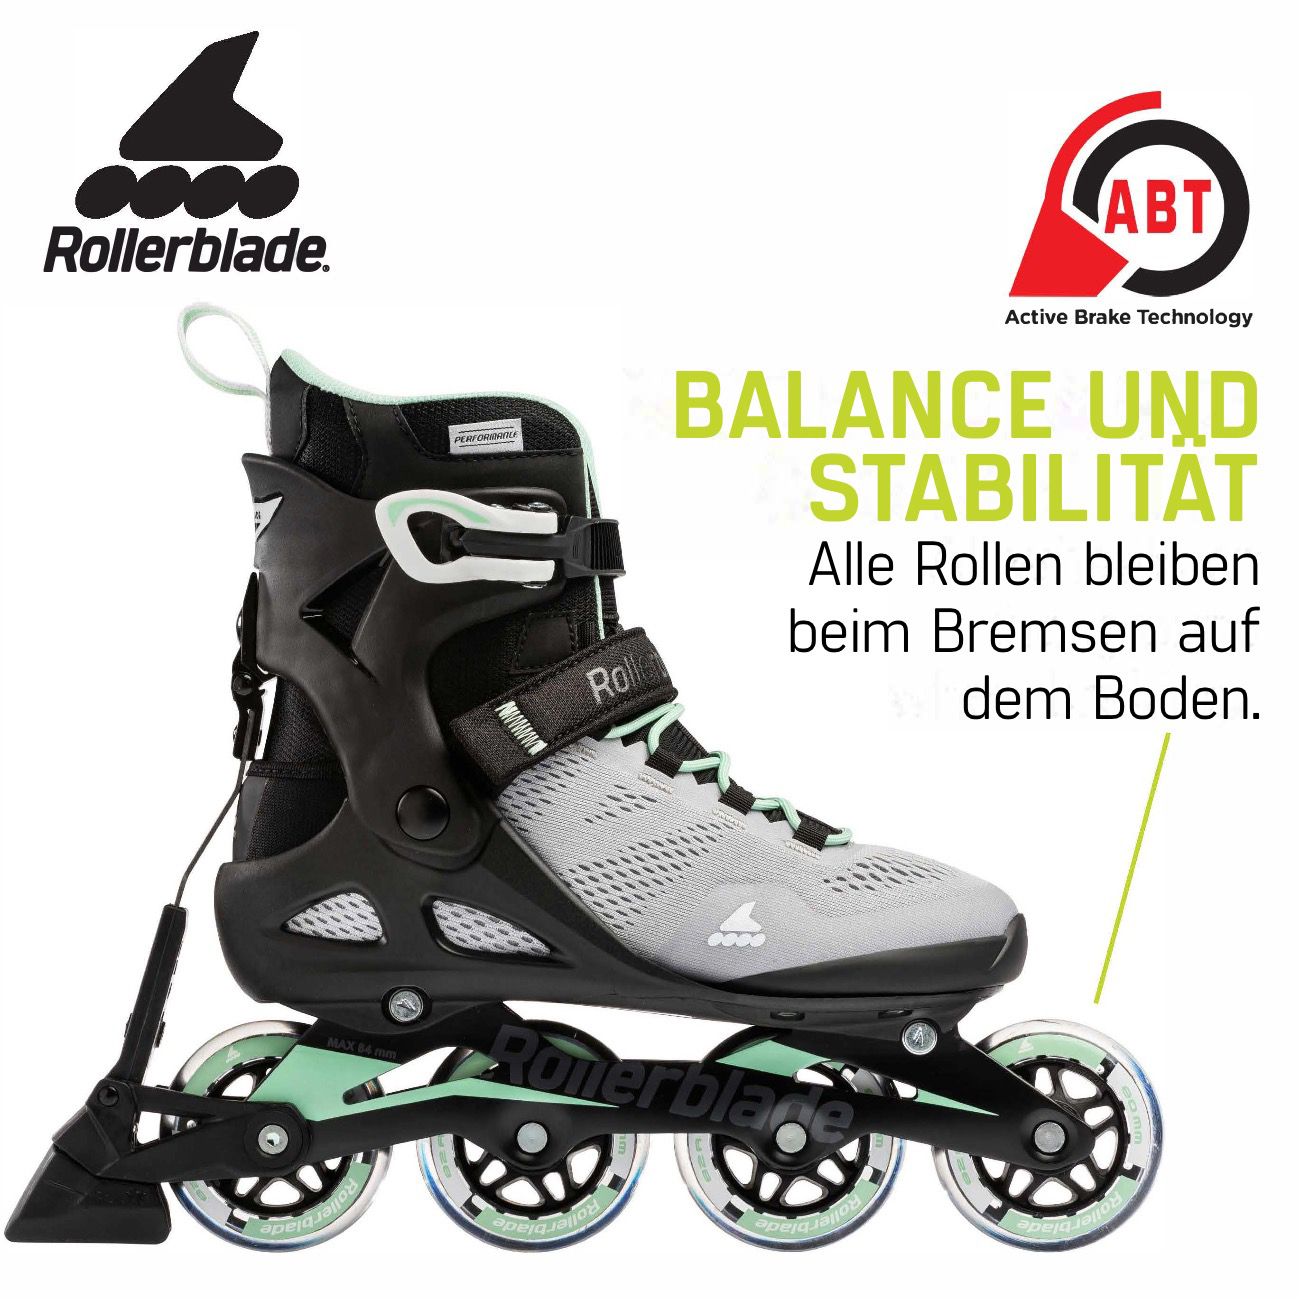 Rollerblade ABT Bremssystem - Stabilität und Balance beim Bremsen. Alle Rollen bleiben beim Bremsen mit dem ABT Bremssystem auf dem Boden.